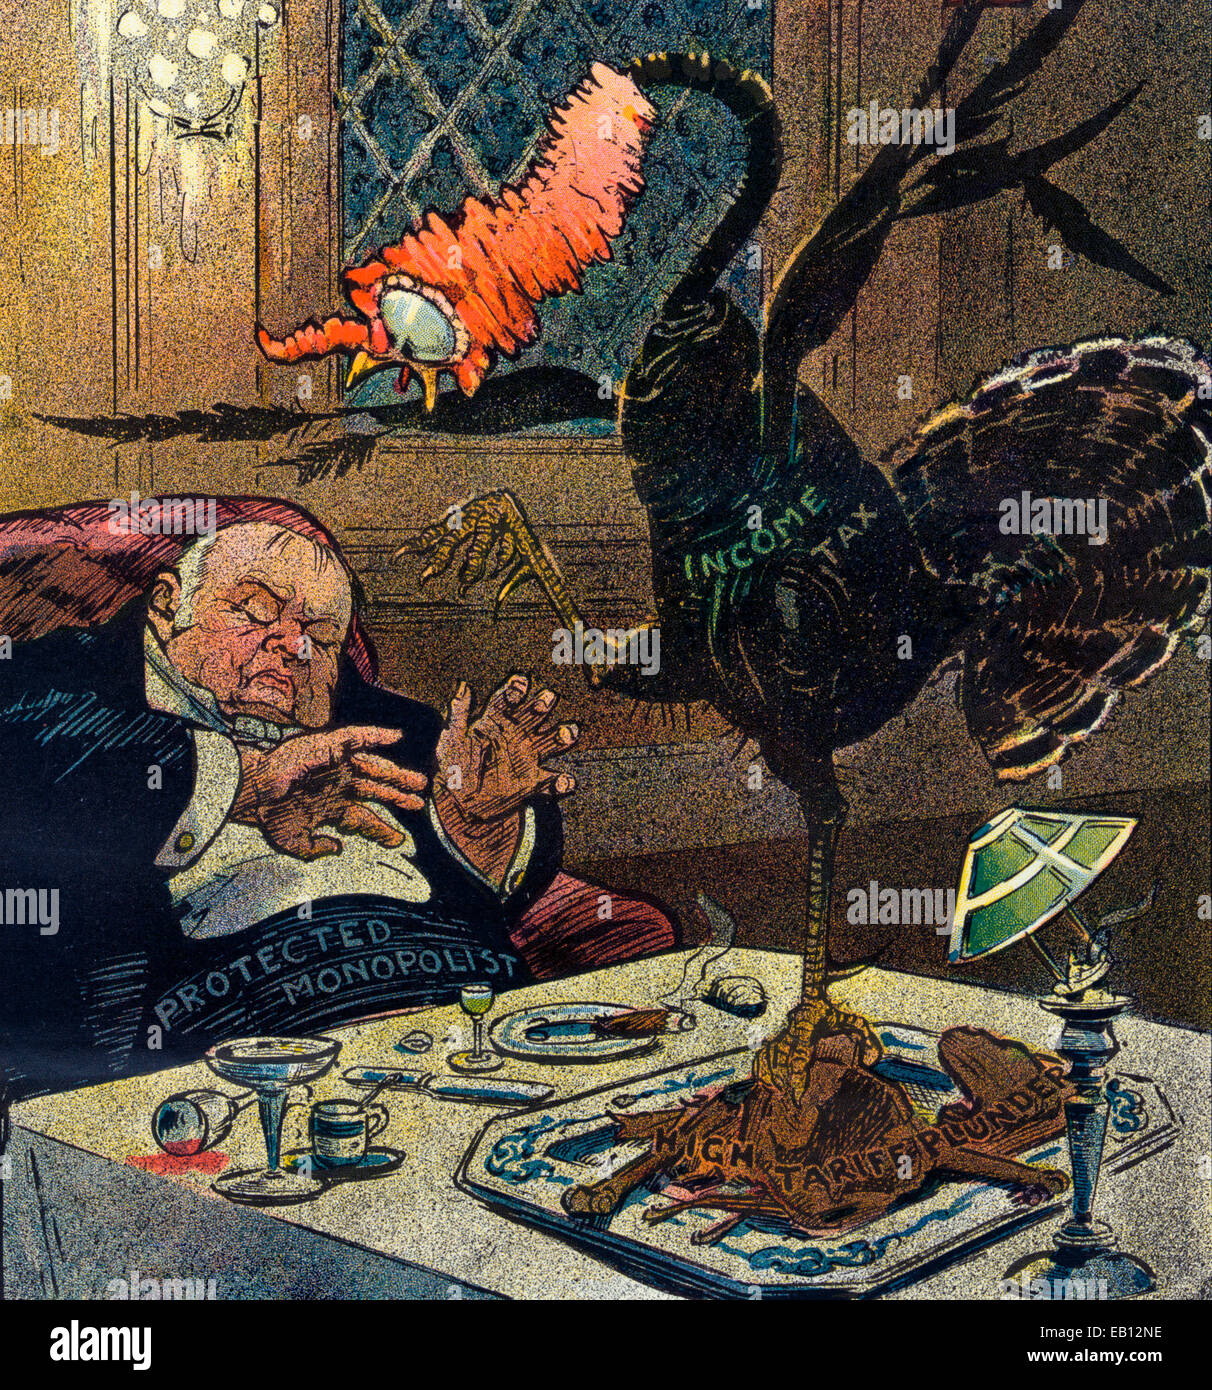 Schlechte Träume - eine natürliche Folge der Völlerei.  Abbildung zeigt einen Schlafsack, aufgeblähten Mann beschriftet "Geschützten Monopolisten" Scheu vor einer Türkei, die mit der Bezeichnung "Einkommensteuer", die aus den Überresten des Thanksgiving Day Dinner mit der Bezeichnung "Hohen Tarif plündern" gestiegen zu sein scheint. Politische Karikatur, 1909 Stockfoto